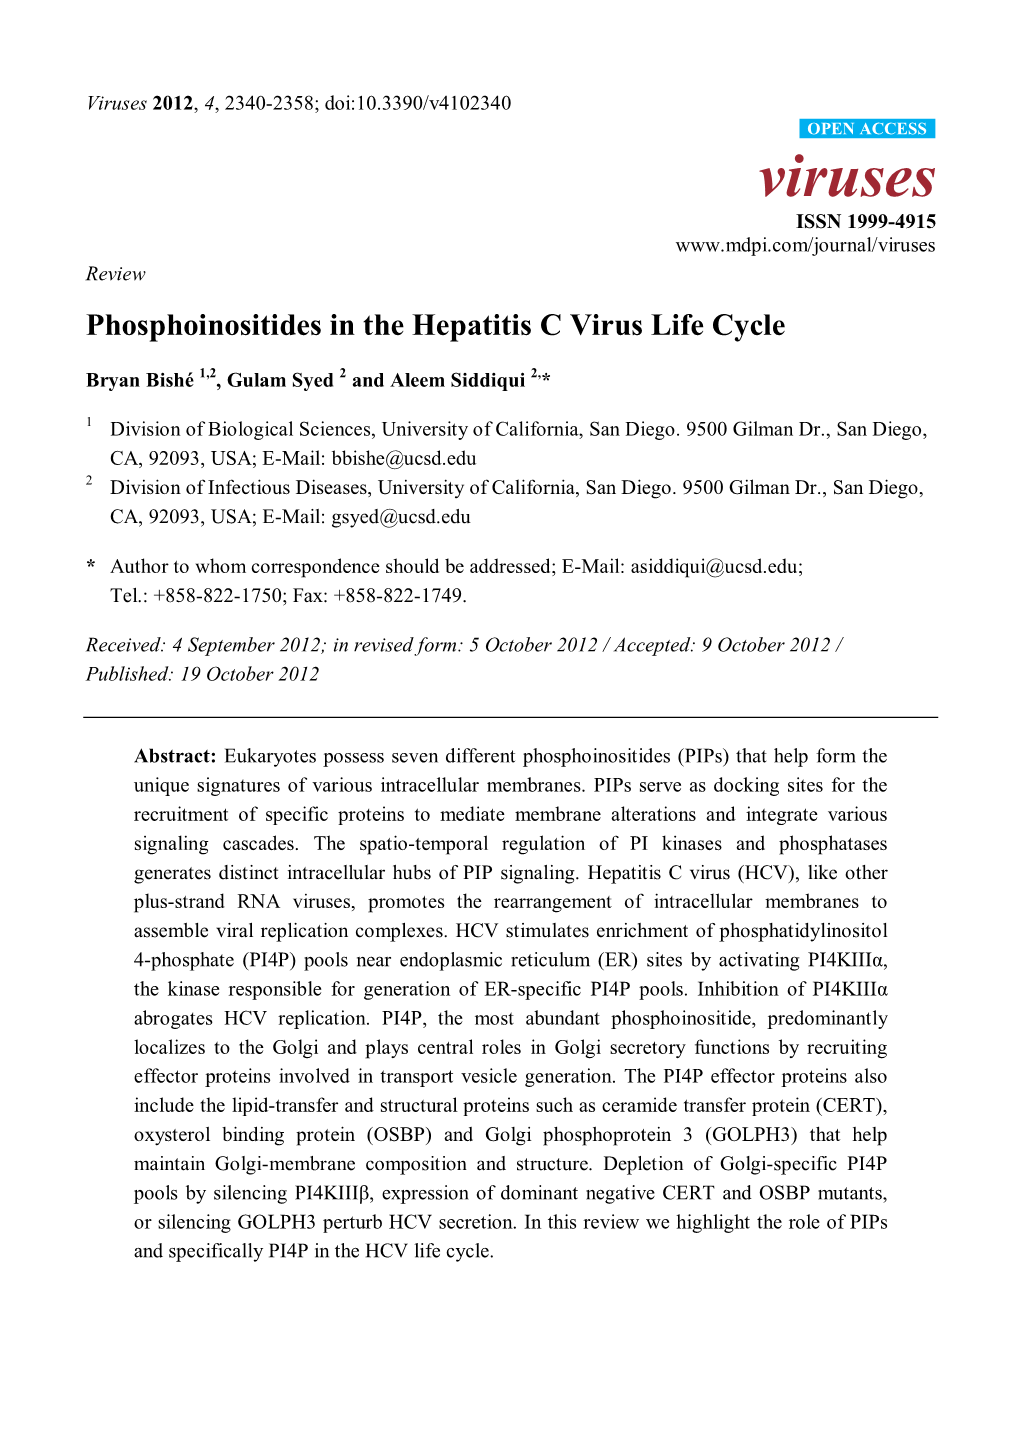 Phosphoinositides in the Hepatitis C Virus Life Cycle